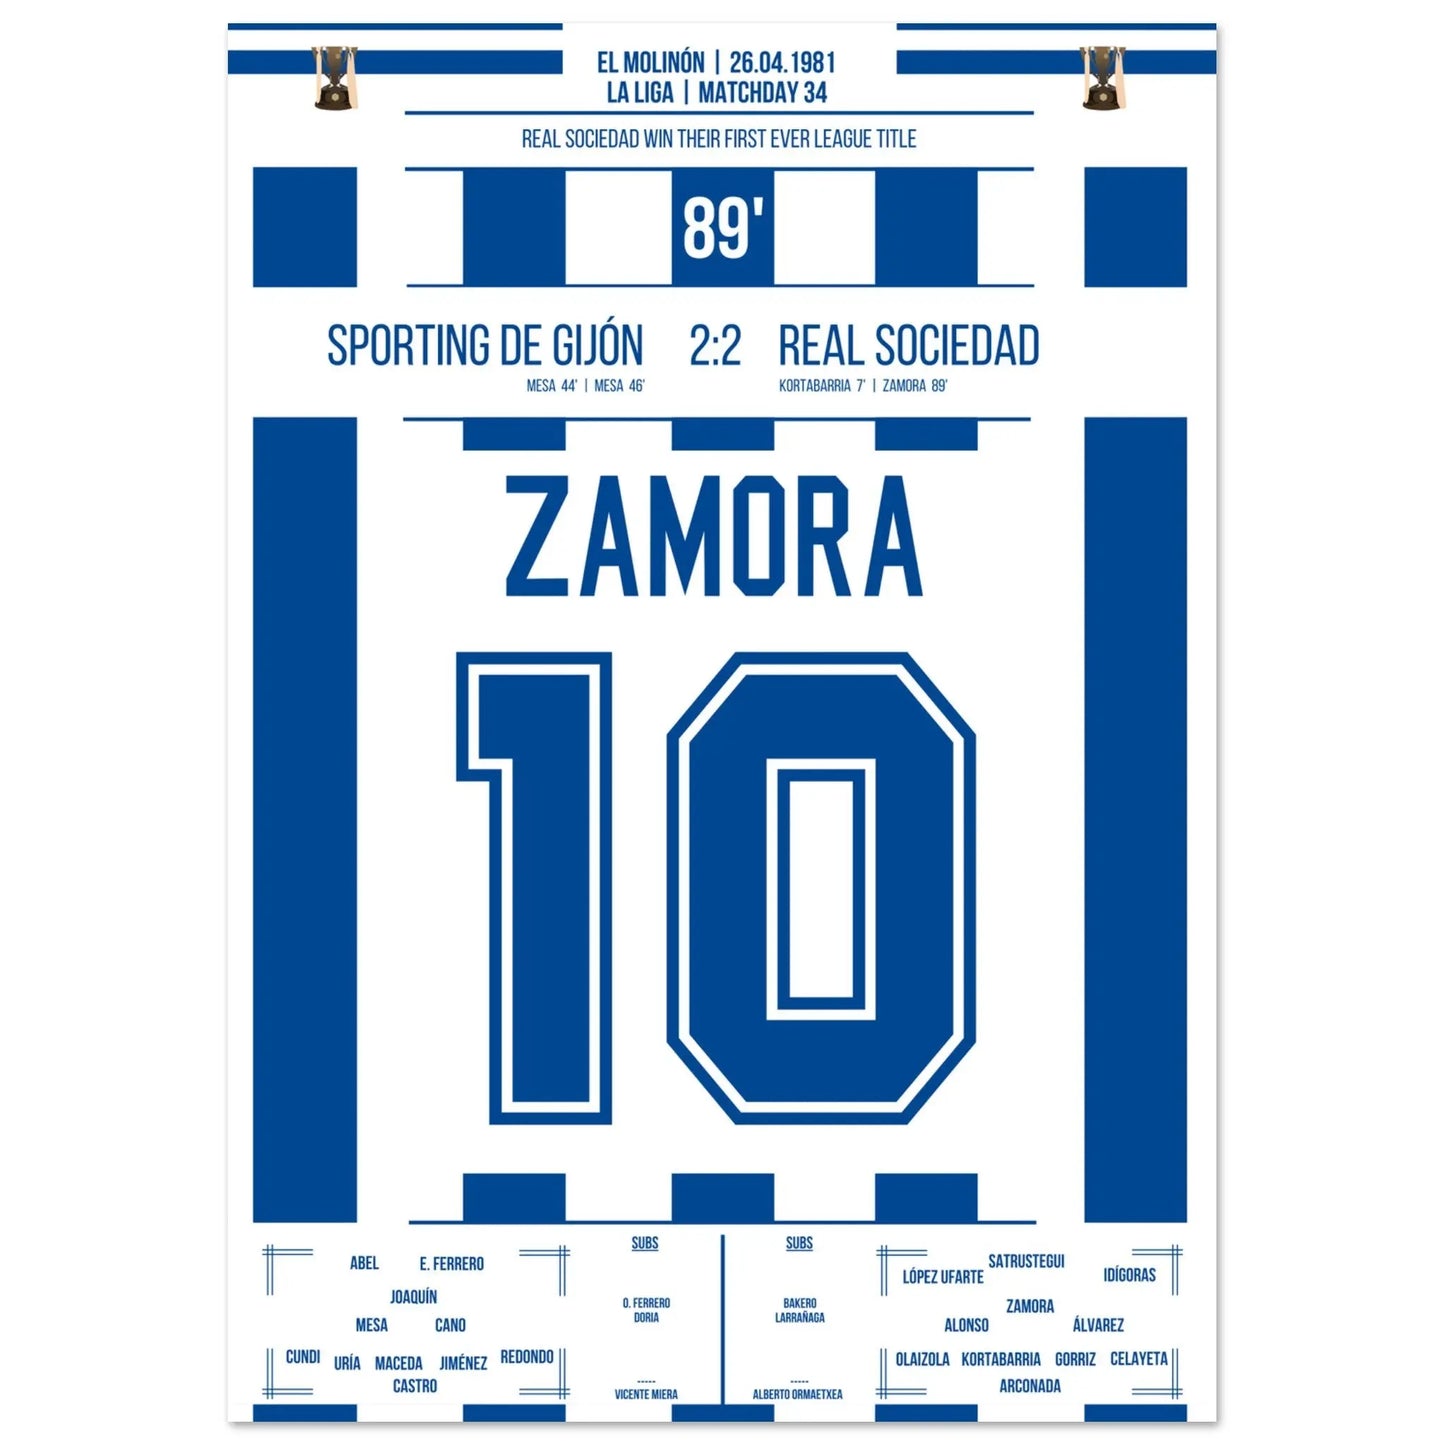 El gol de Zamora en el primer campeonato donostiarra en la historia del club